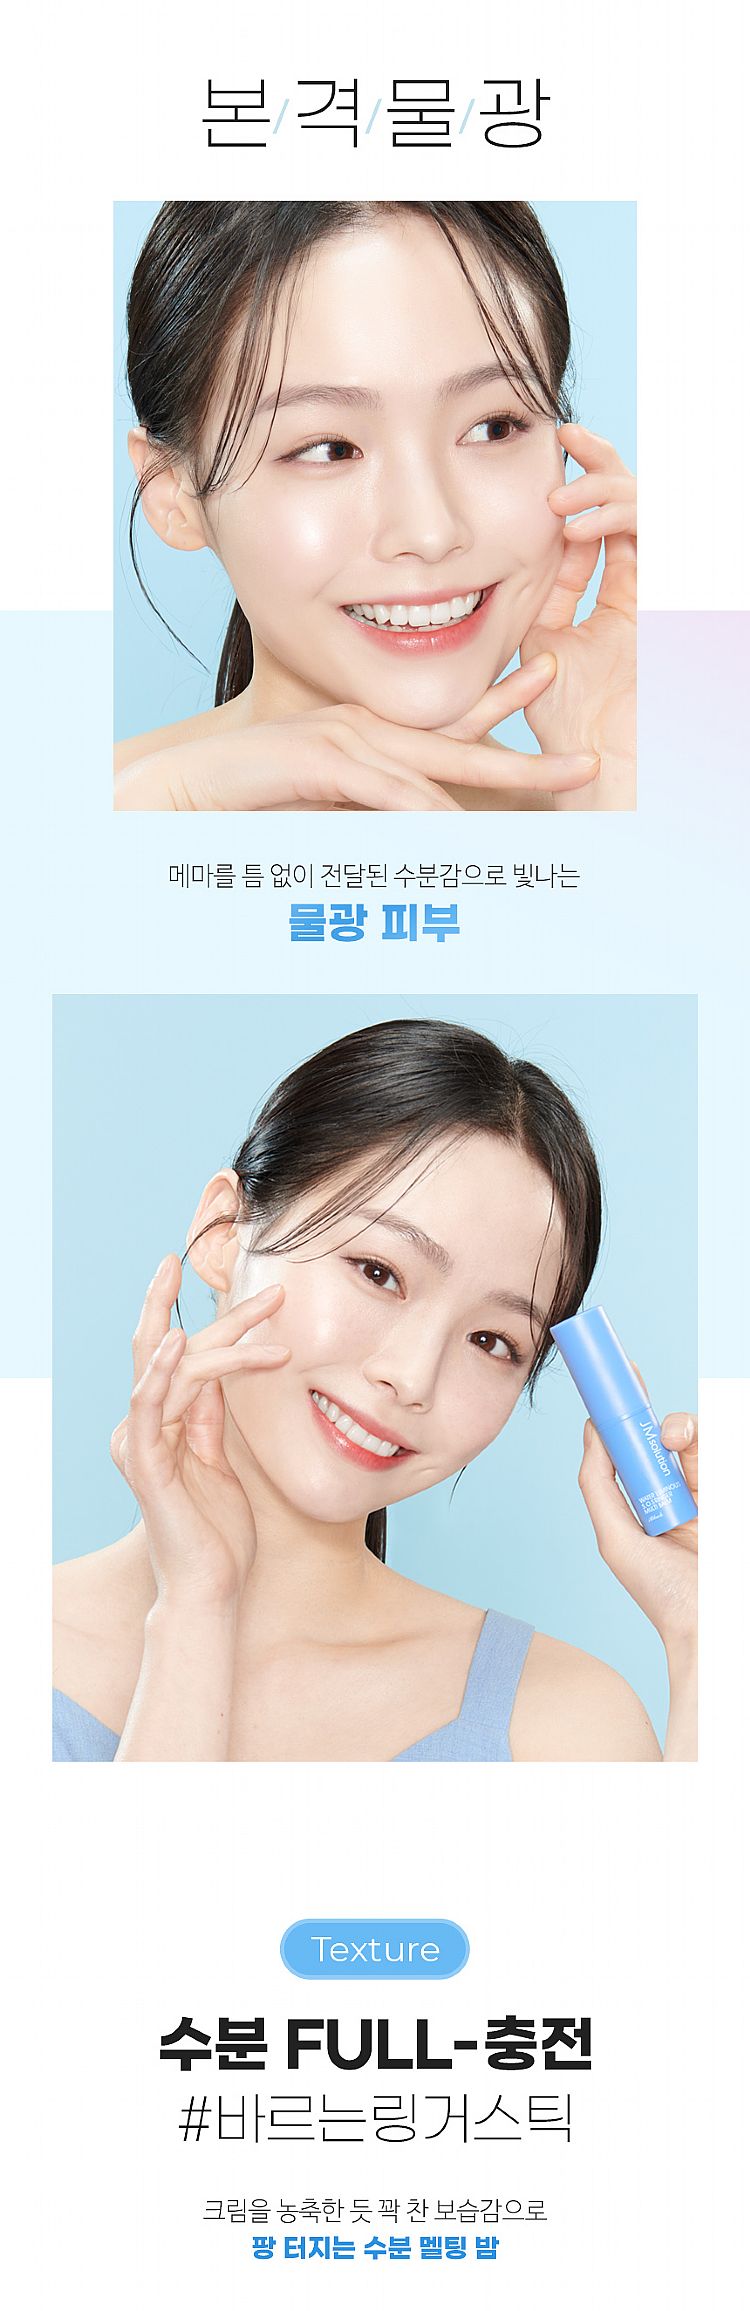 臉部保養 保濕 溫和 保濕 韓國 臉部保養